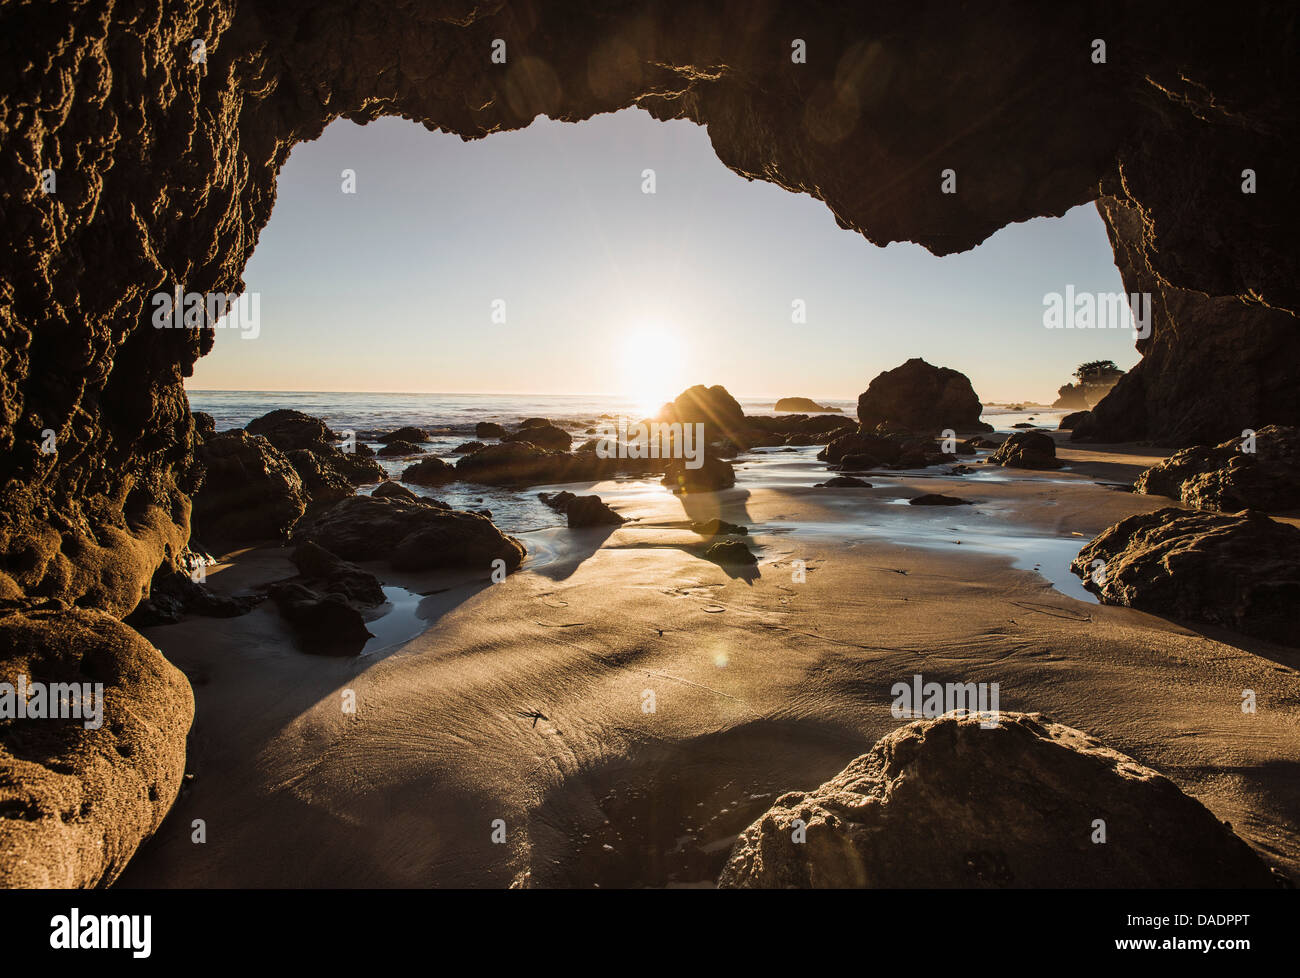 View from cave at El Matador beach, Malibu, California, USA Stock Photo